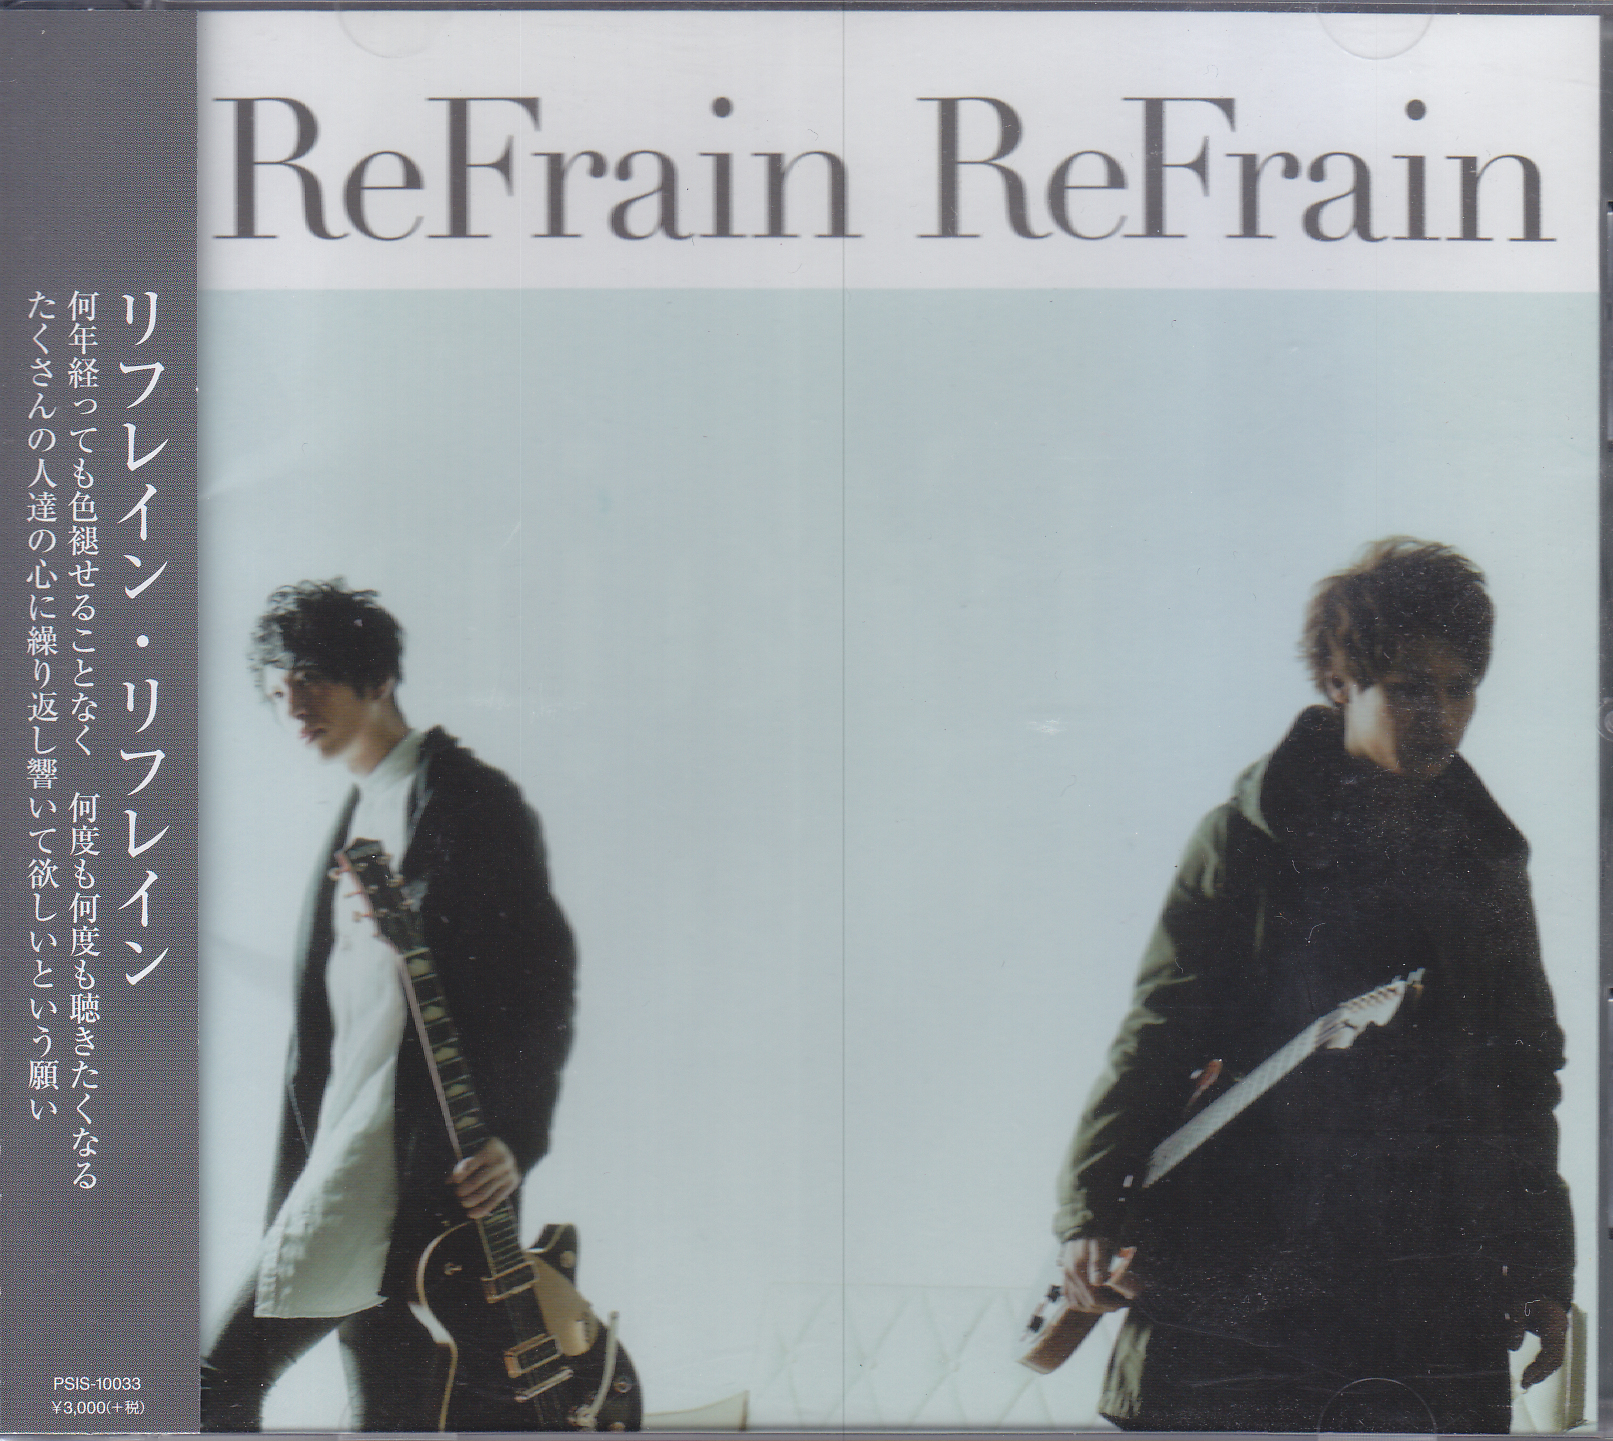 ReFrain ReFrain ( リフレインリフレイン )  の CD ReFrain ReFrain